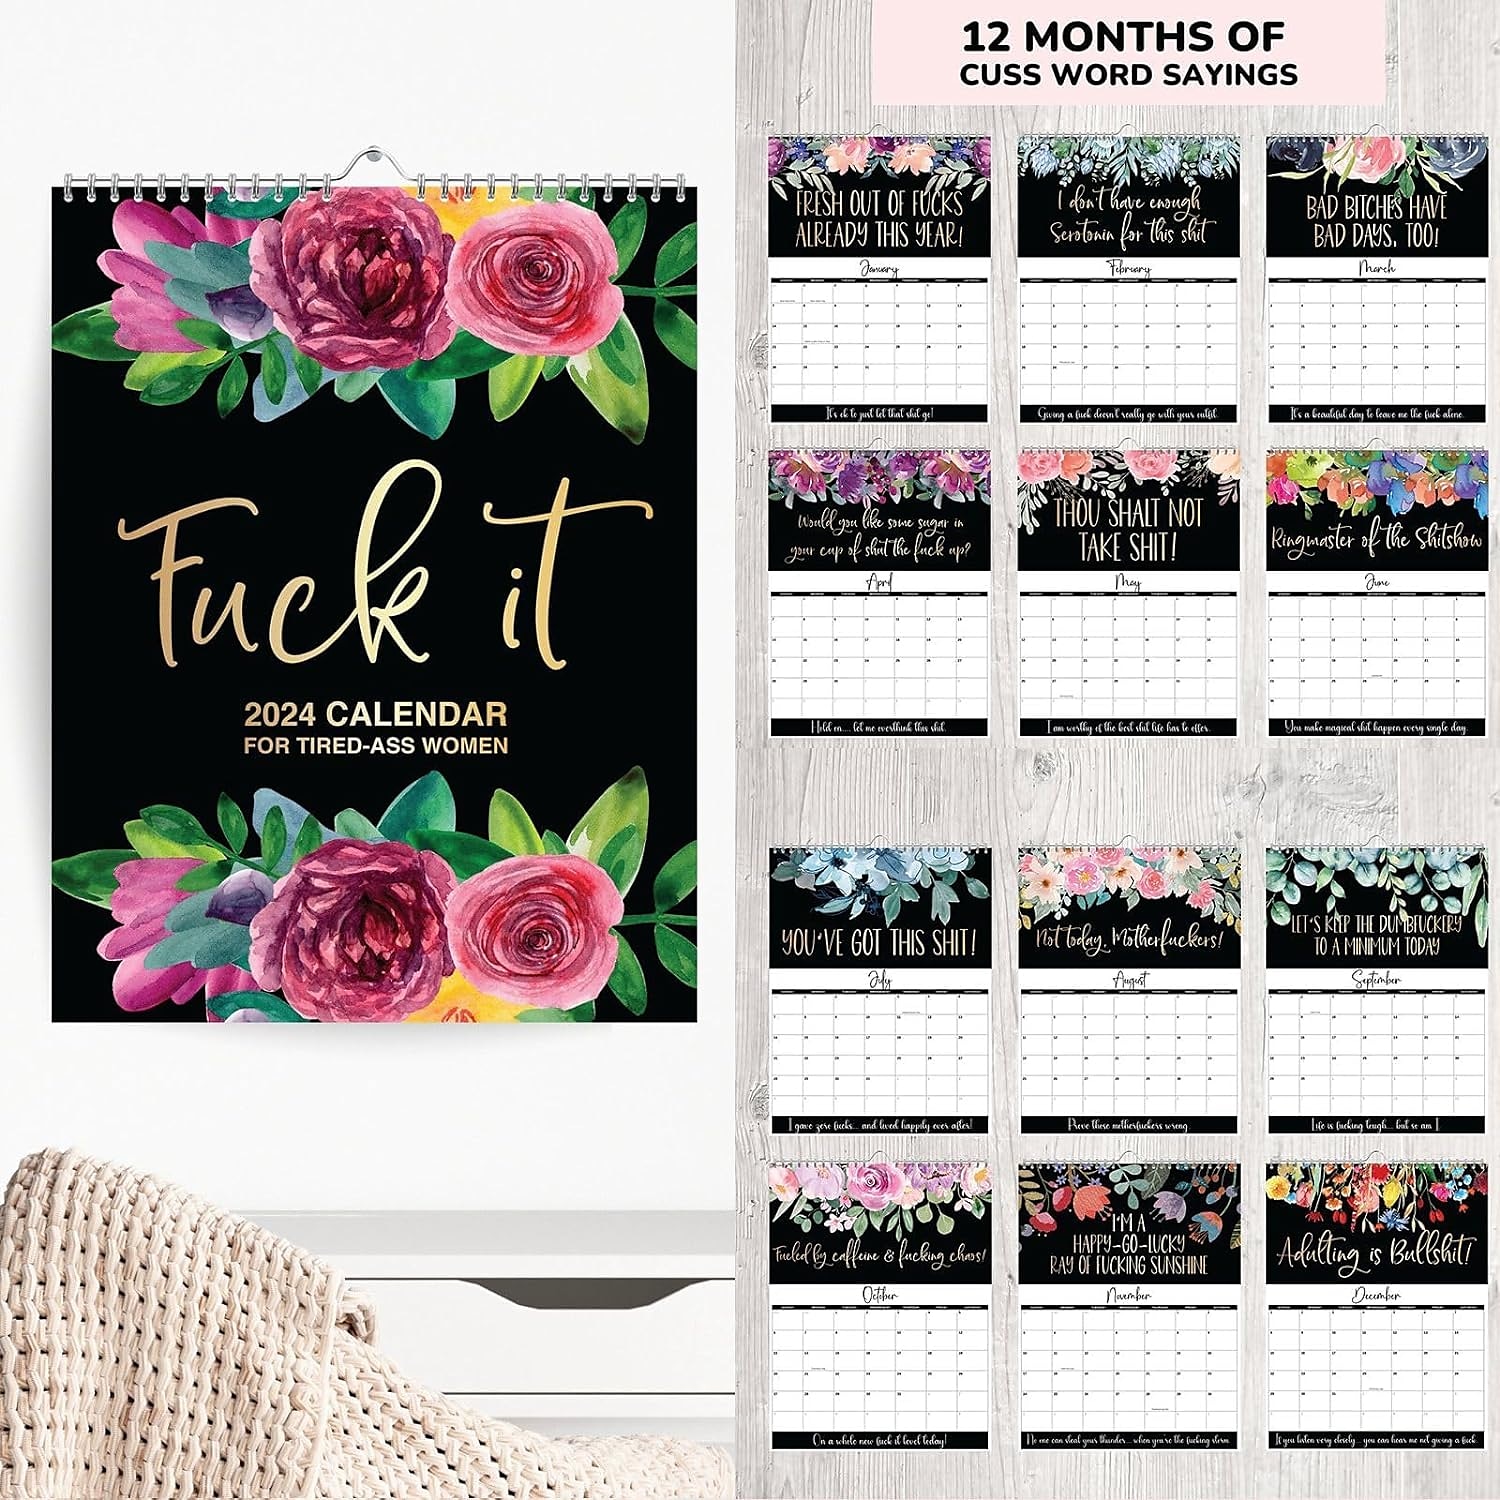  2024 Desk Calendar for Tired-Ass Women - Sweary Calendar,  Fu-ck It 2024 Calendar, Big Ass Calendar, Tired Woman Calendar, Funny  Monthly Desk Calendar Gag Gift for Women (1 Piece) : Office Products